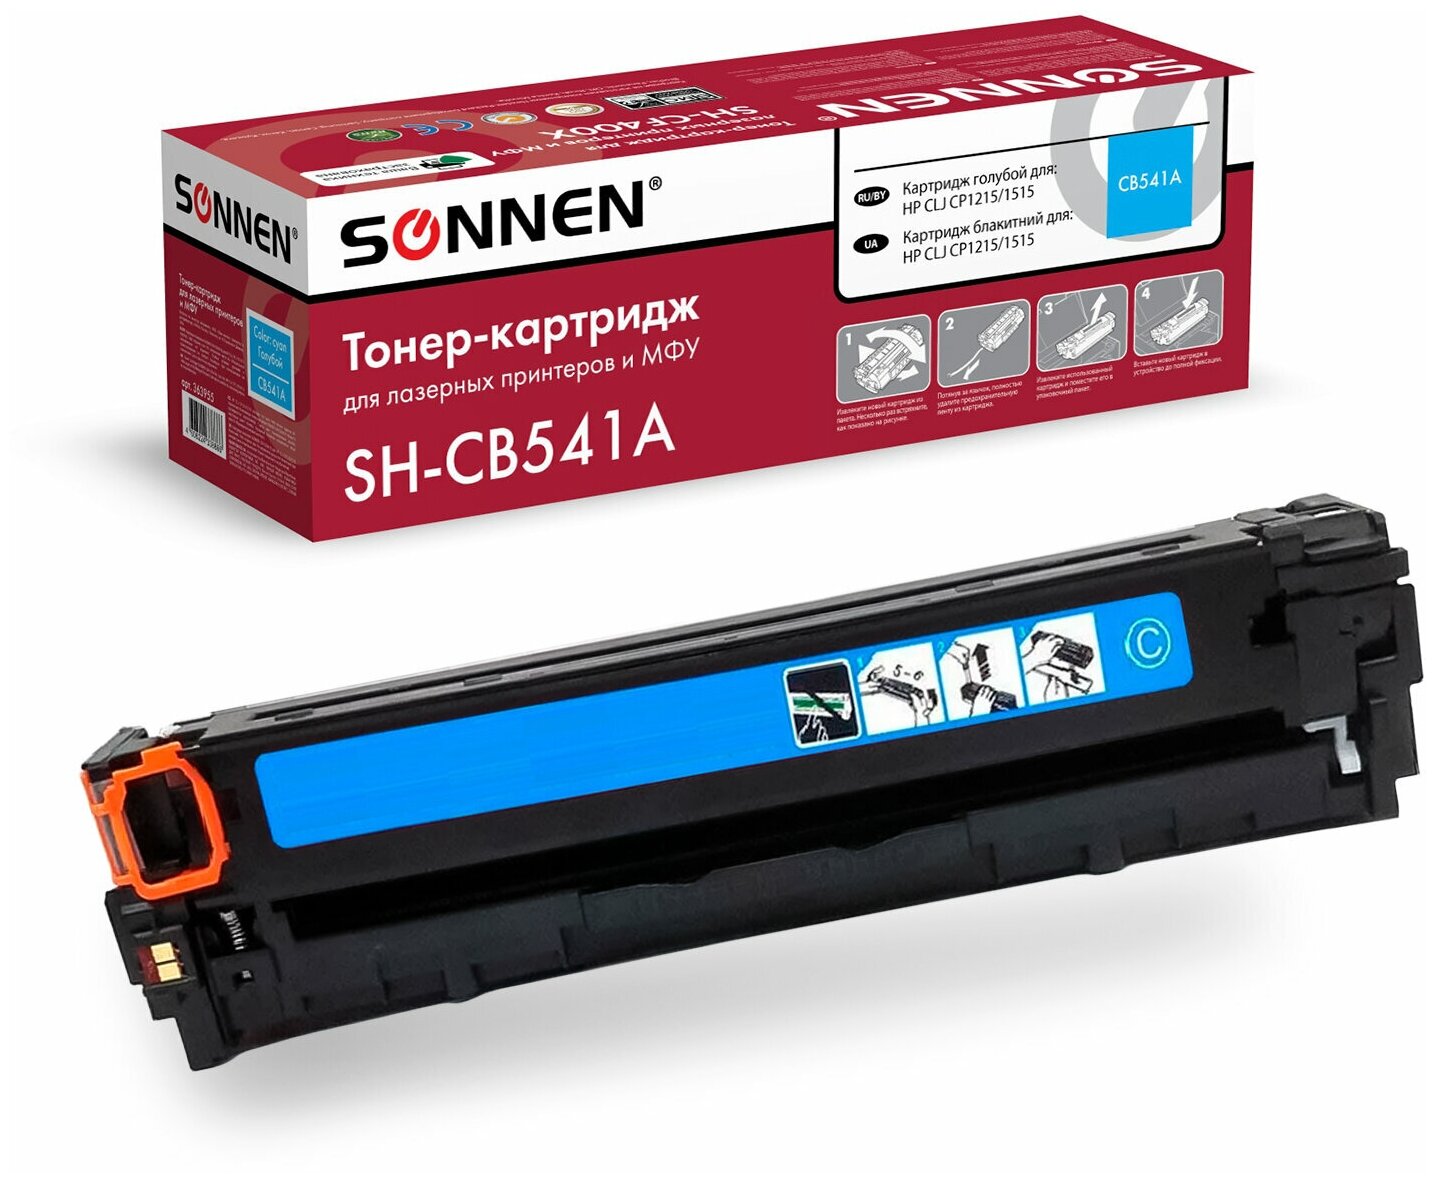 SONNEN Картридж лазерный (SH-CB541A) для HP CLJ CP1215/1515 высшее качество, голубой, 1400 страниц, 363955